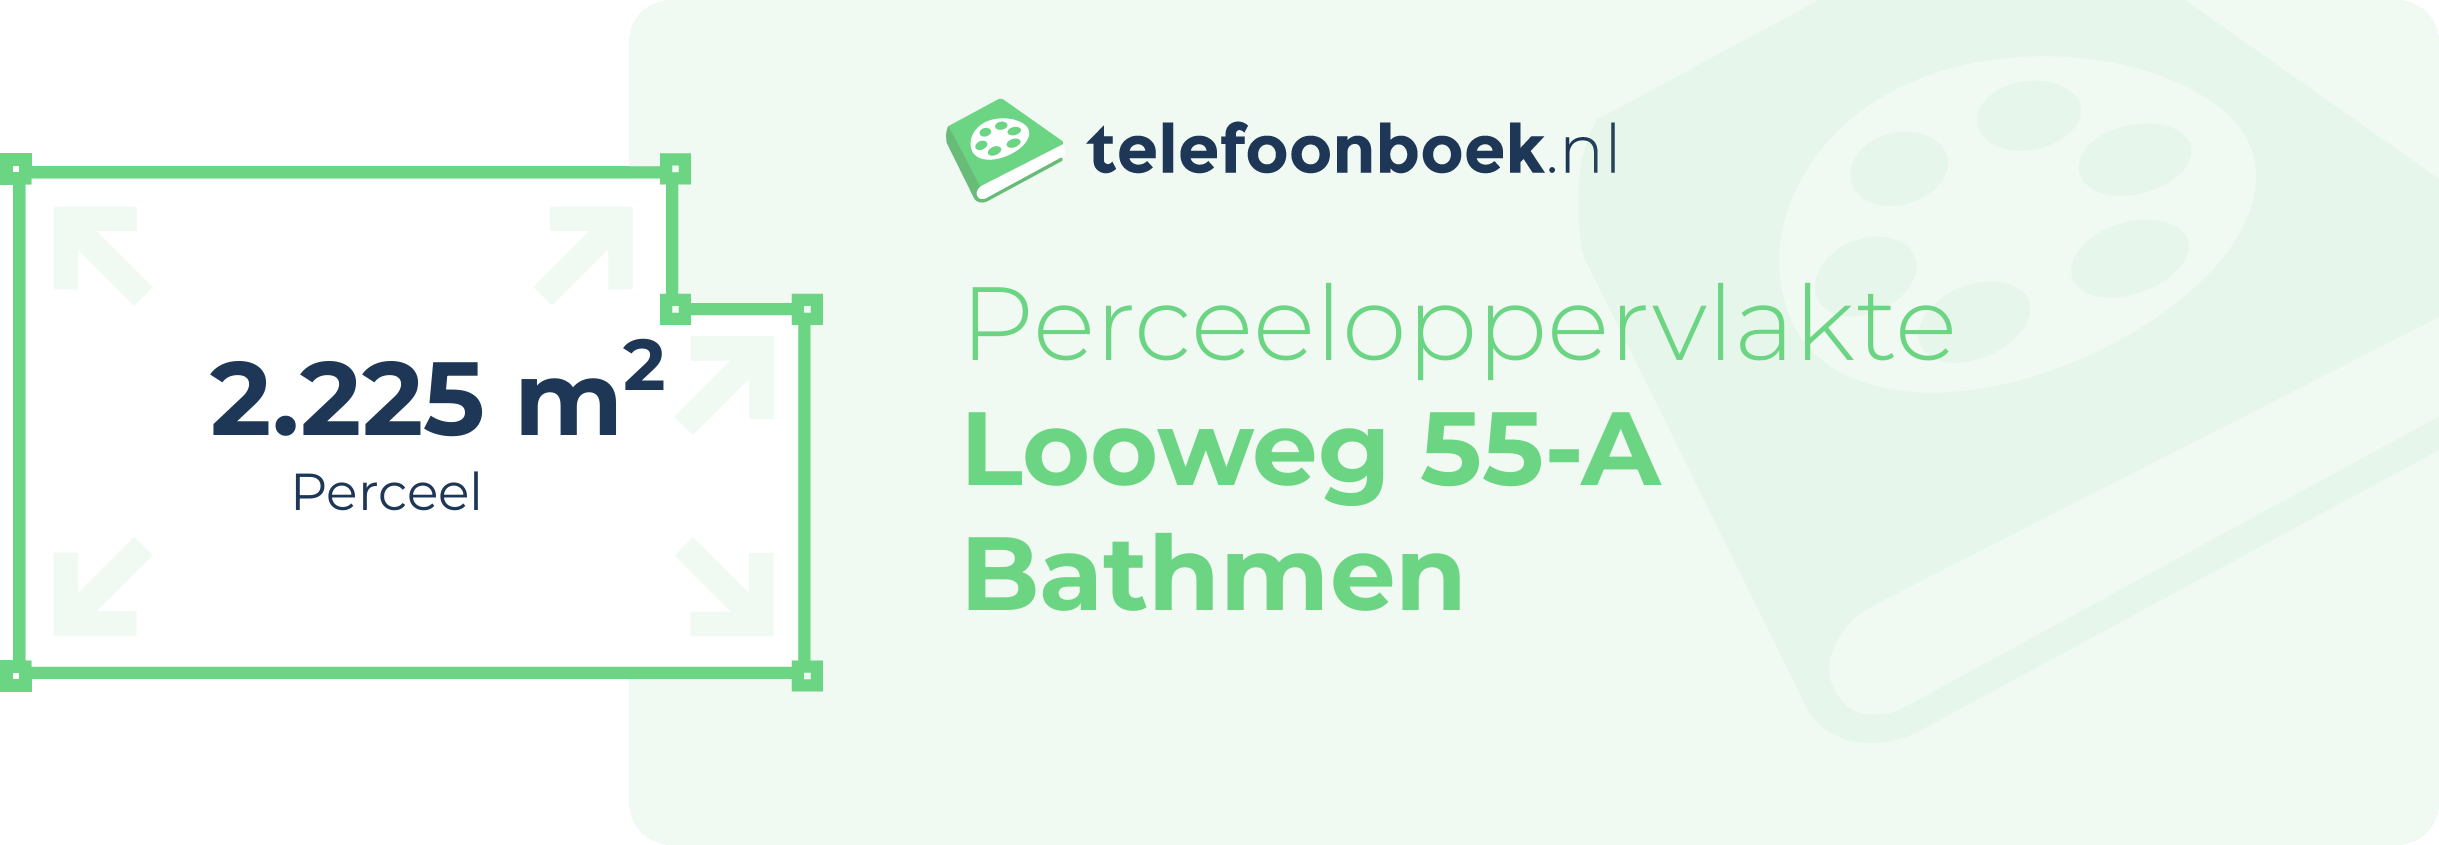 Perceeloppervlakte Looweg 55-A Bathmen